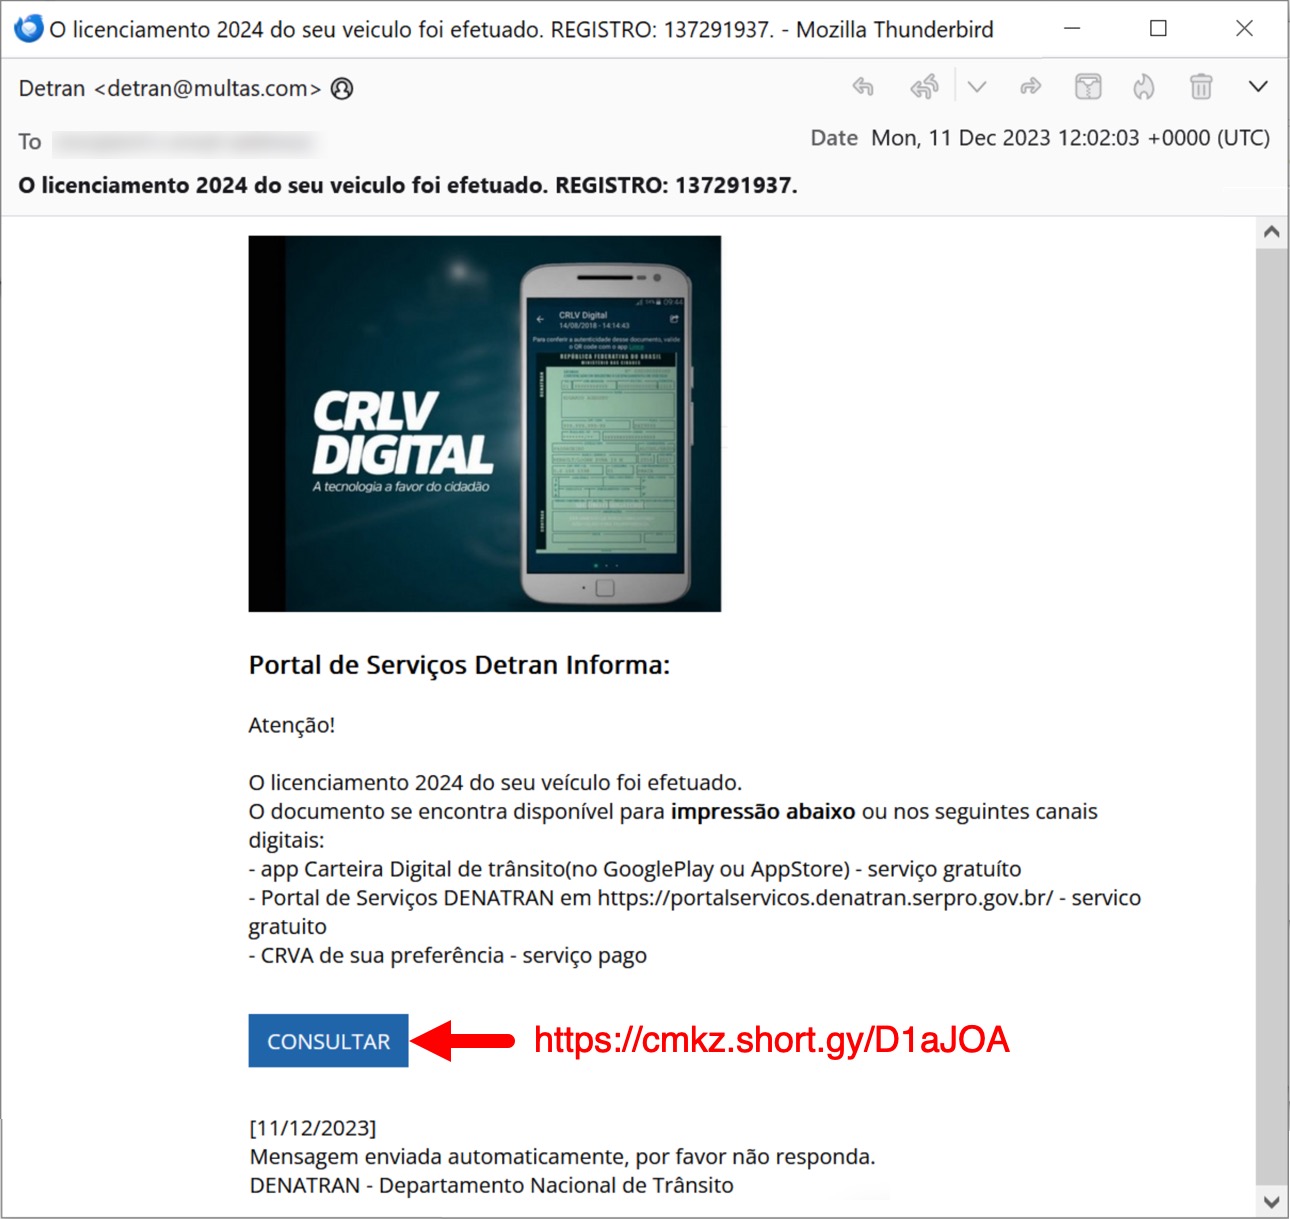 Mozilla Thunderbird の電子メールのスクリーンショット。言語はポルトガル語です。青い [CONSULTAR (相談する)] というボタンは、赤字で書いた URL にリンクしてあります。 